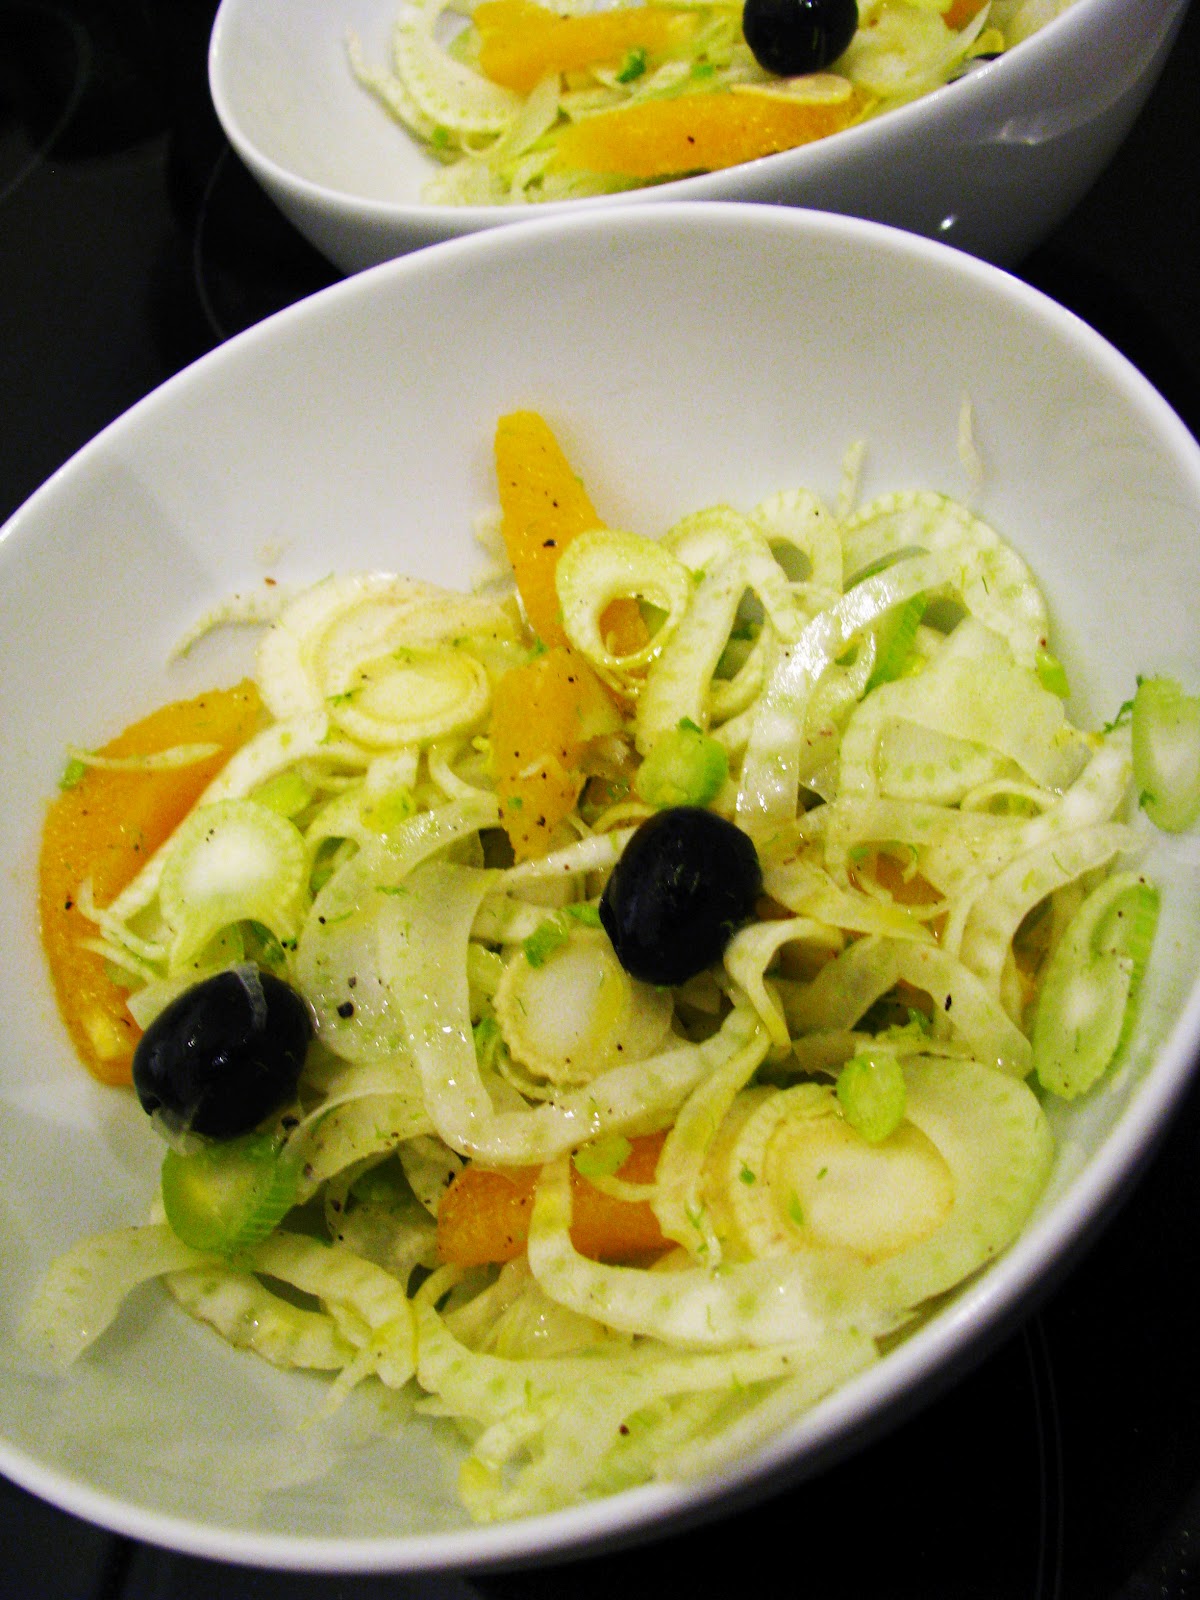 Fenchel Orangen Salat Auf Rucola — Rezepte Suchen